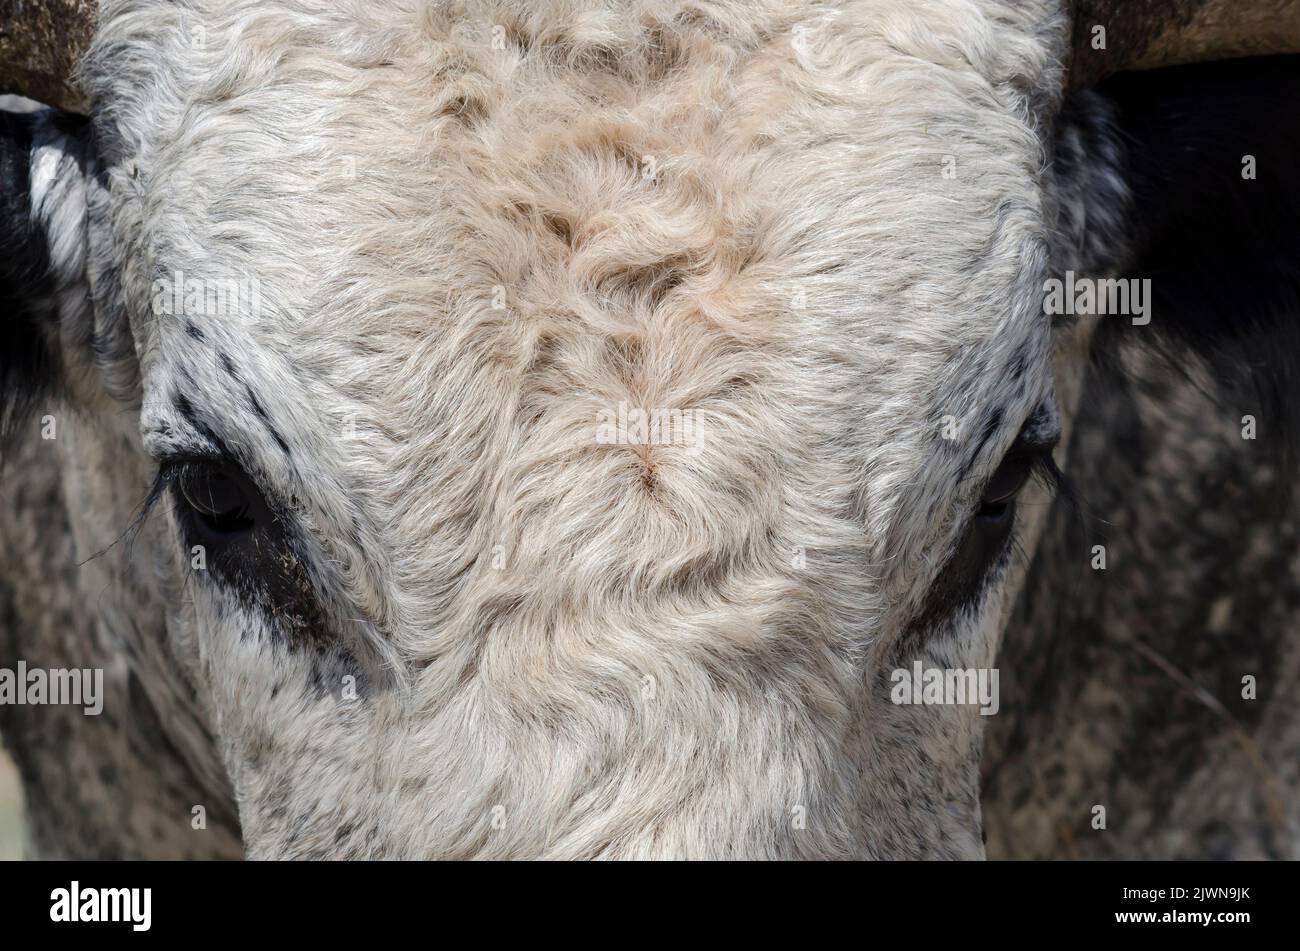 Texas Longhorn, Bos taurus taurus, bull face Stock Photo